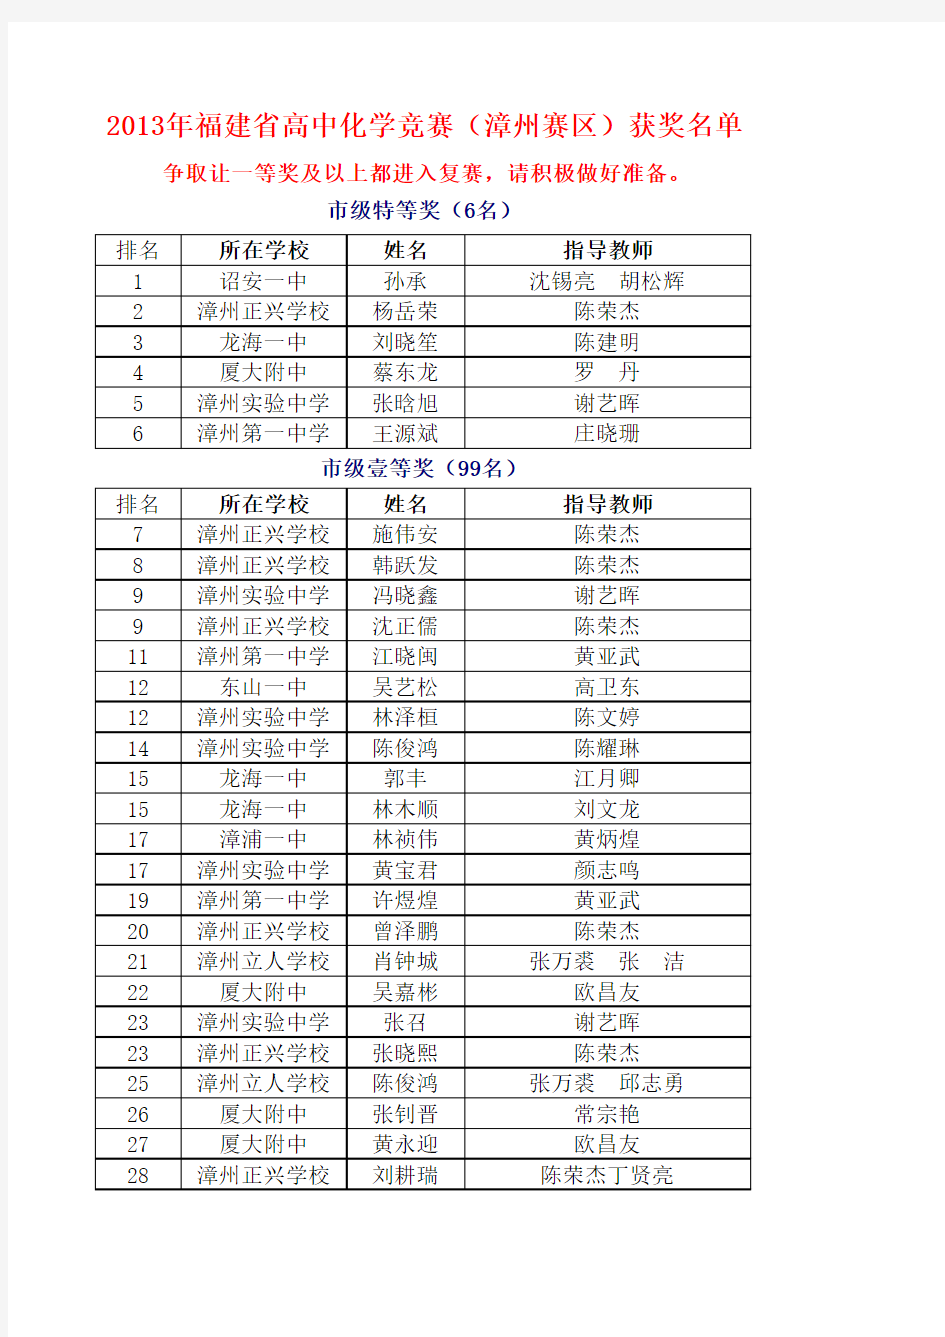 2013福建高中化学竞赛(漳州赛区)奖名单5月5日